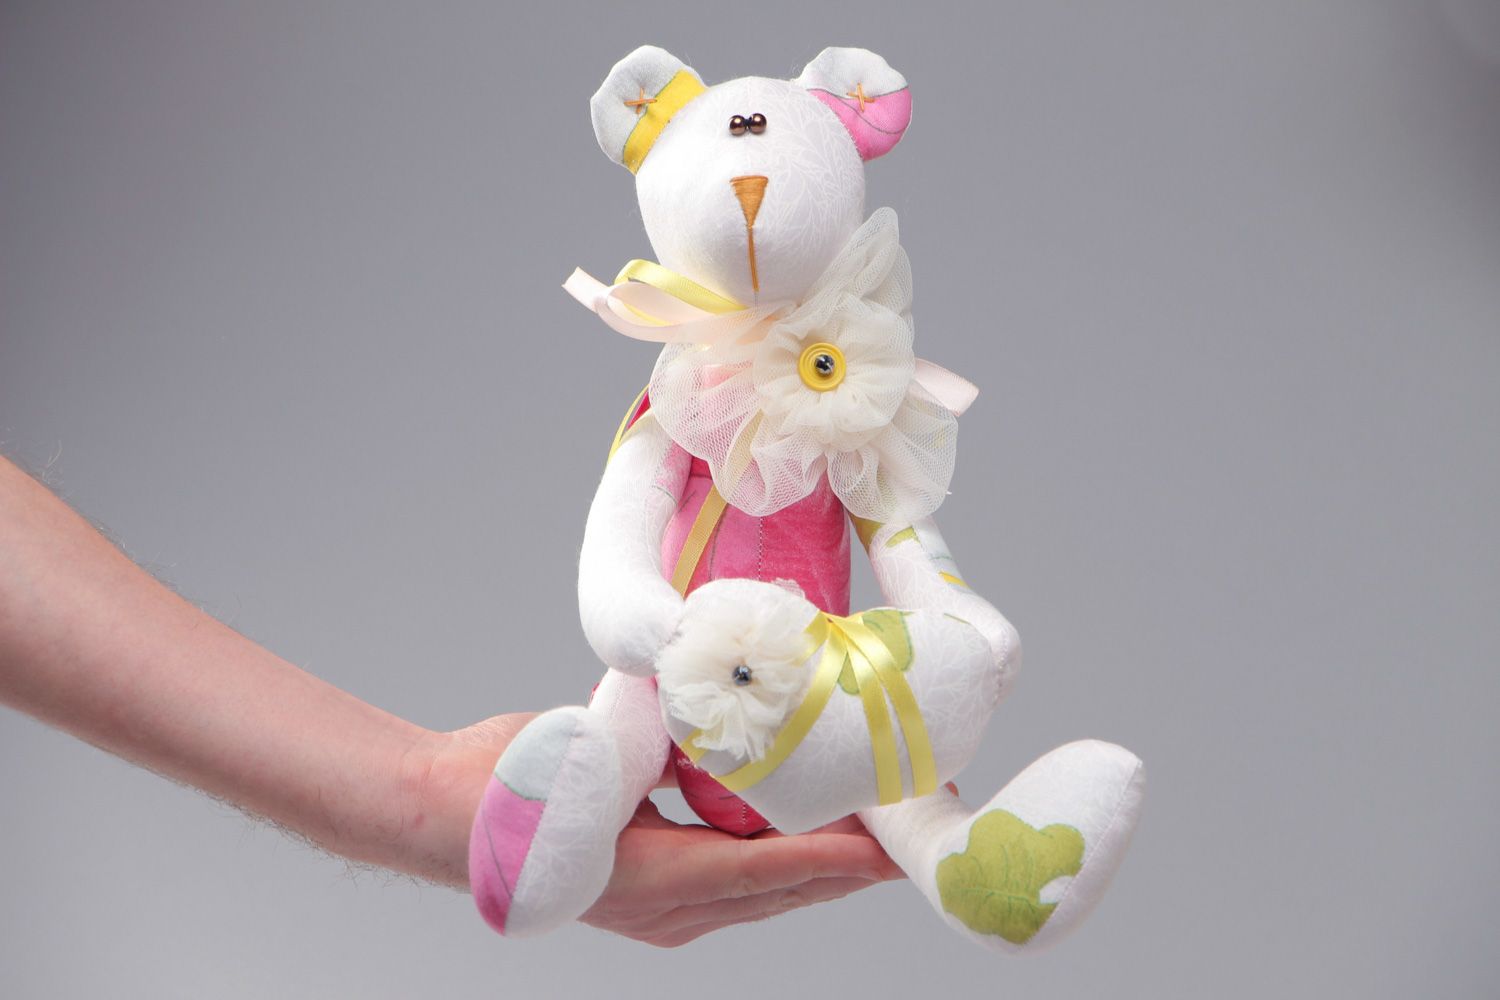 Яркая мягкая игрушка в виде медвежонка из хлопка для ребенка фото 4